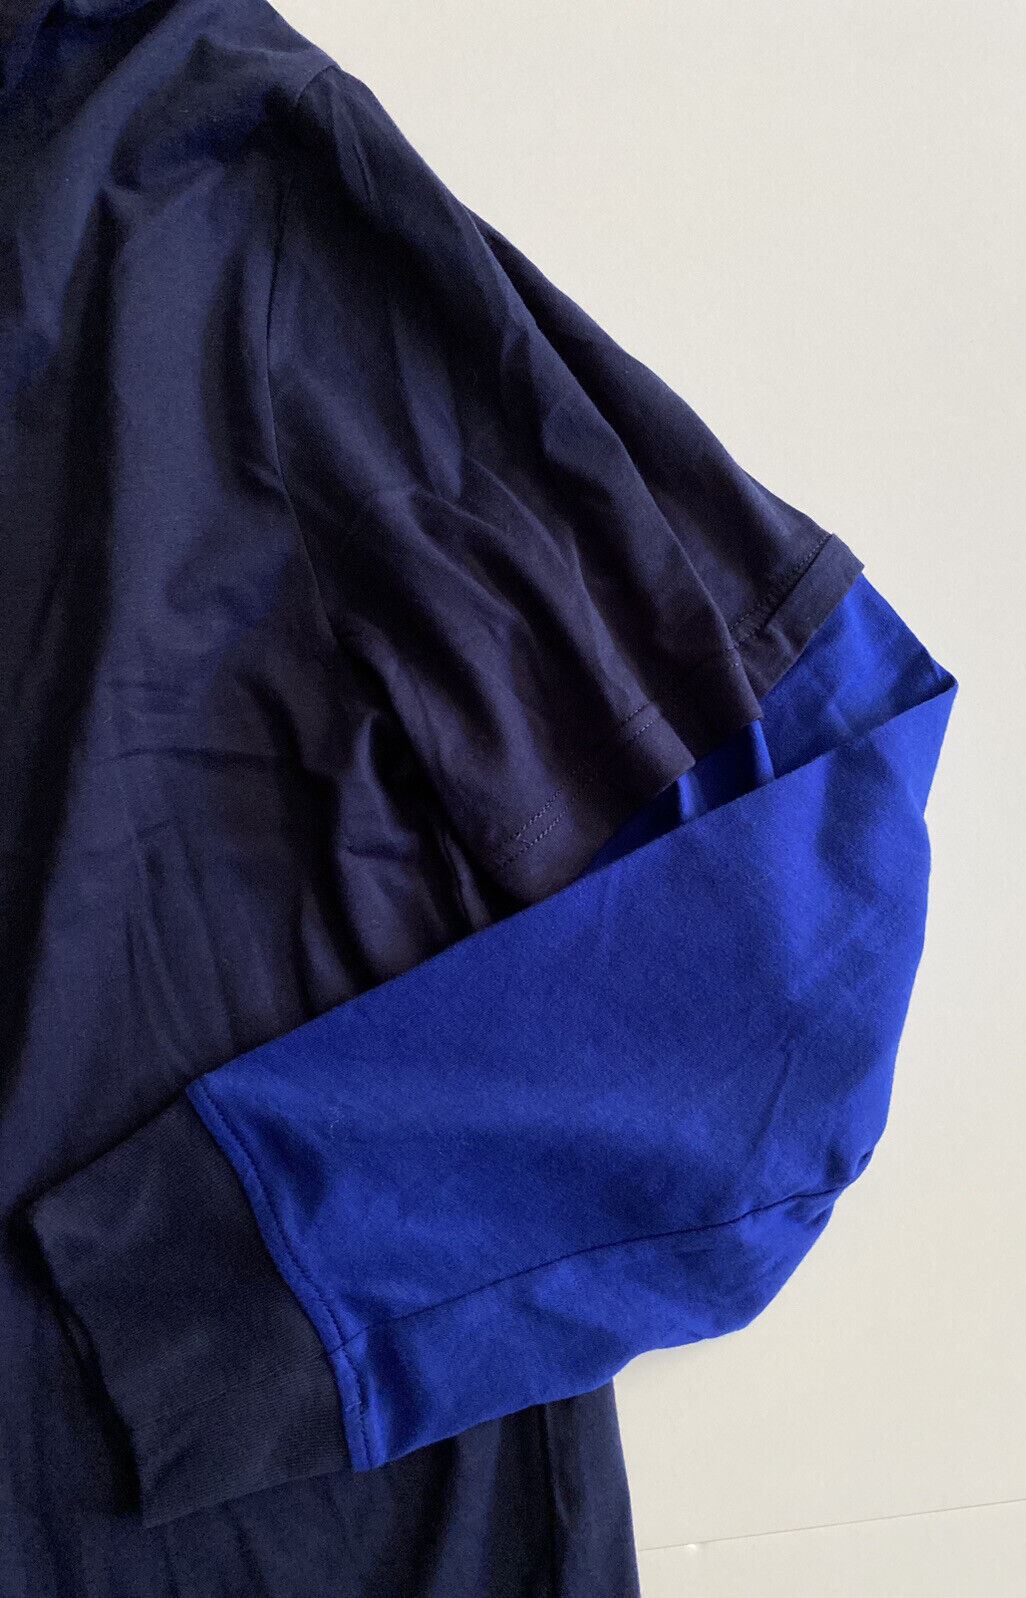 Толстовка с длинным рукавом и фирменным логотипом NWT Polo Ralph Lauren, темно-синий размер XL 